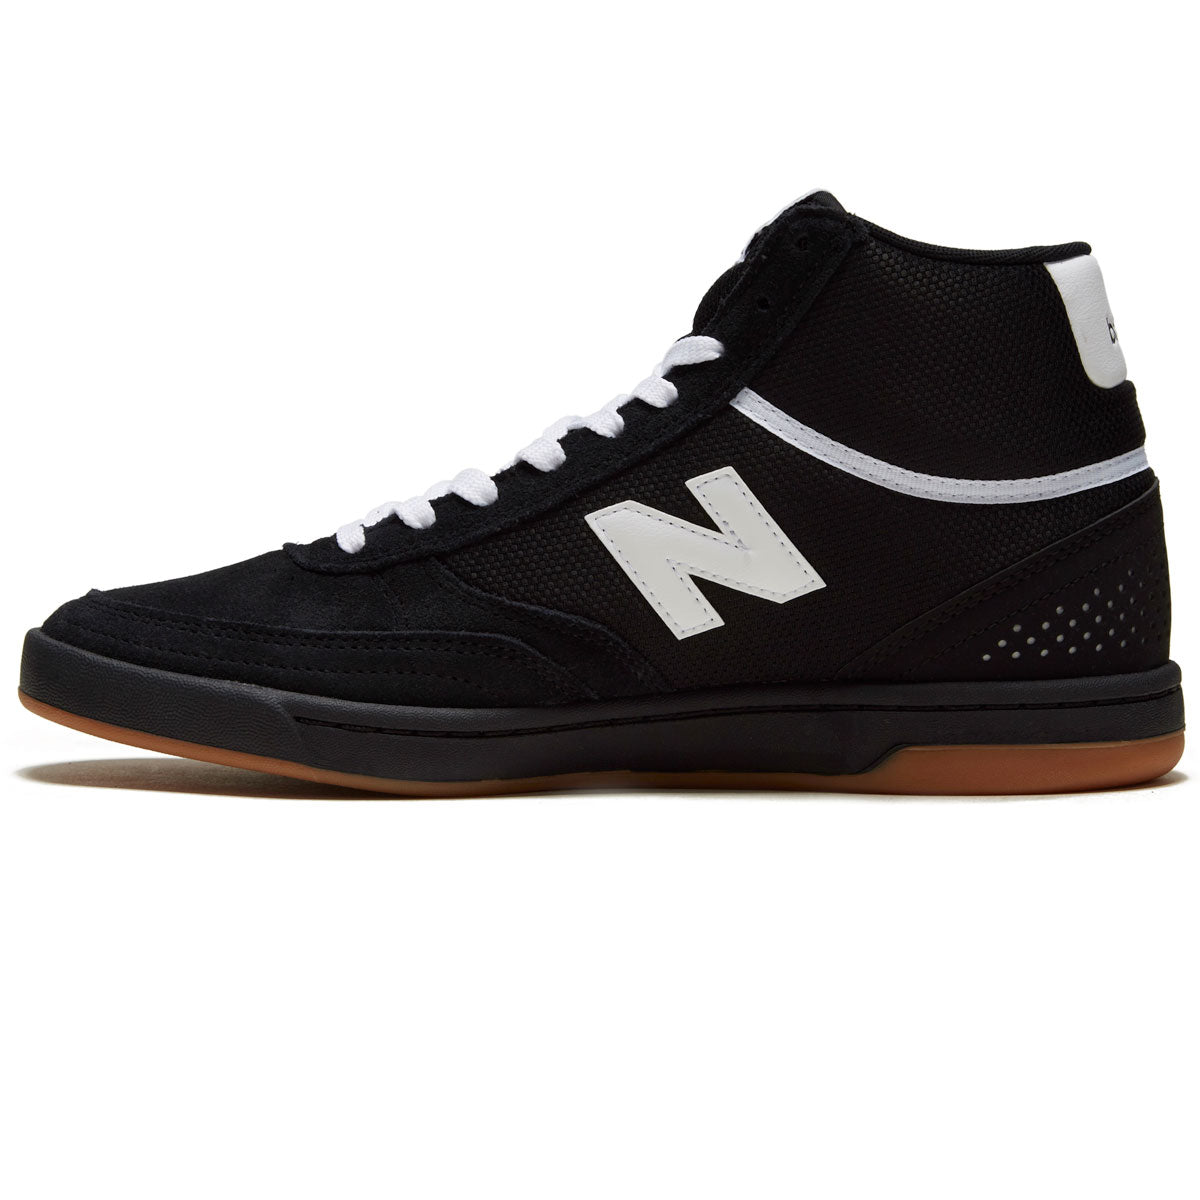 New Balance 440 Hi Shoes - Black/White image 2